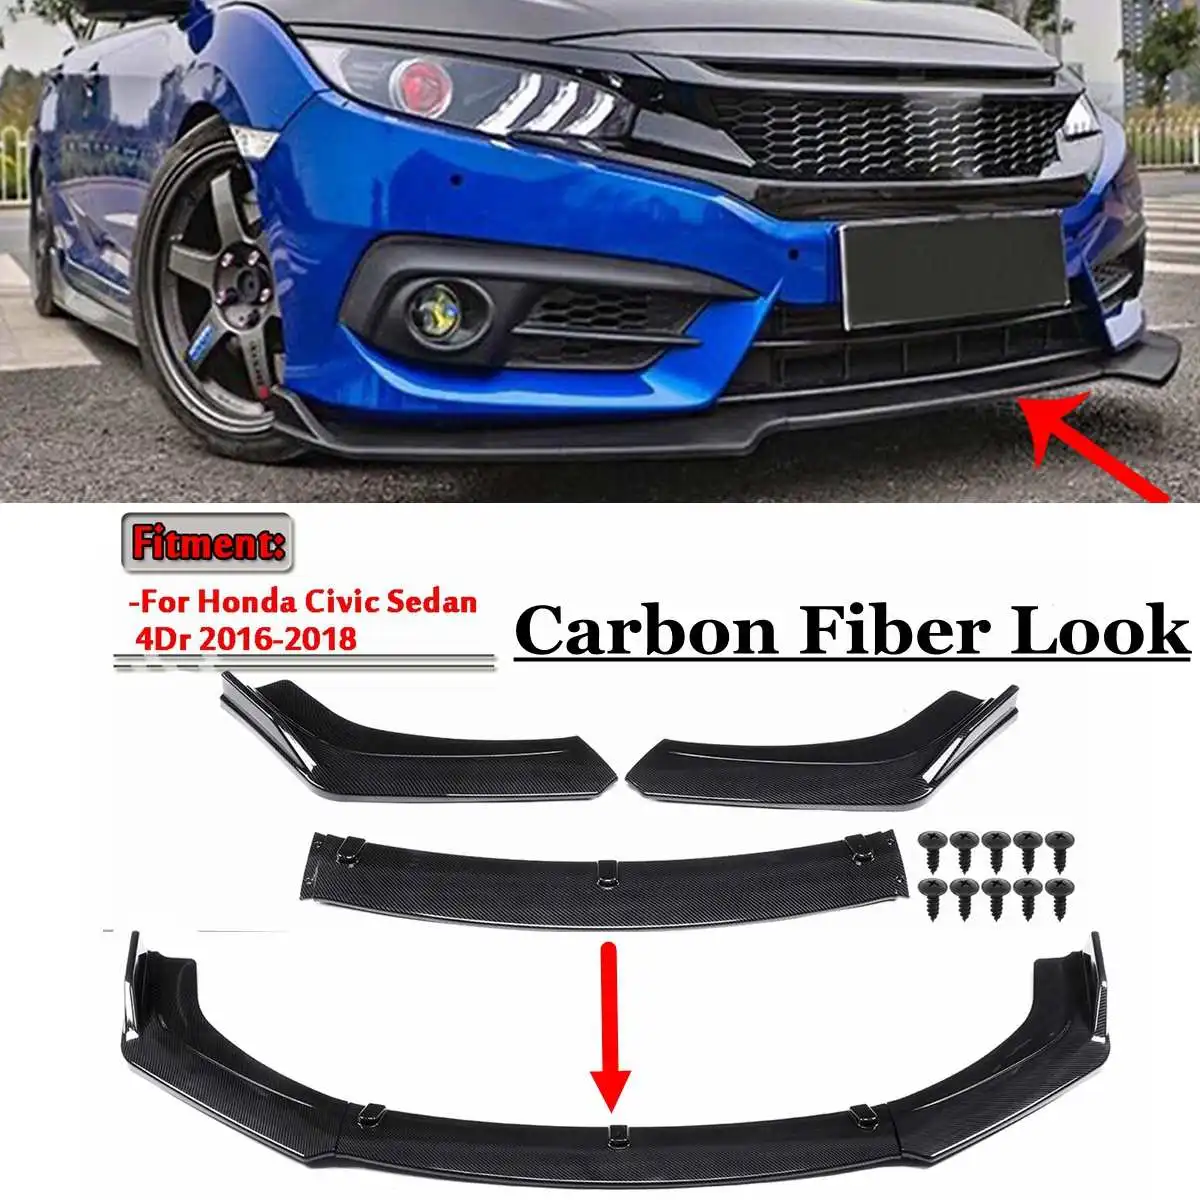 Parachoques delantero inferior de coche, Kit de carrocería de alerón con apariencia de fibra de carbono, color negro, para Honda, Civic, Sedan 4Dr, 2016, 2017, 2018, 3 unidades